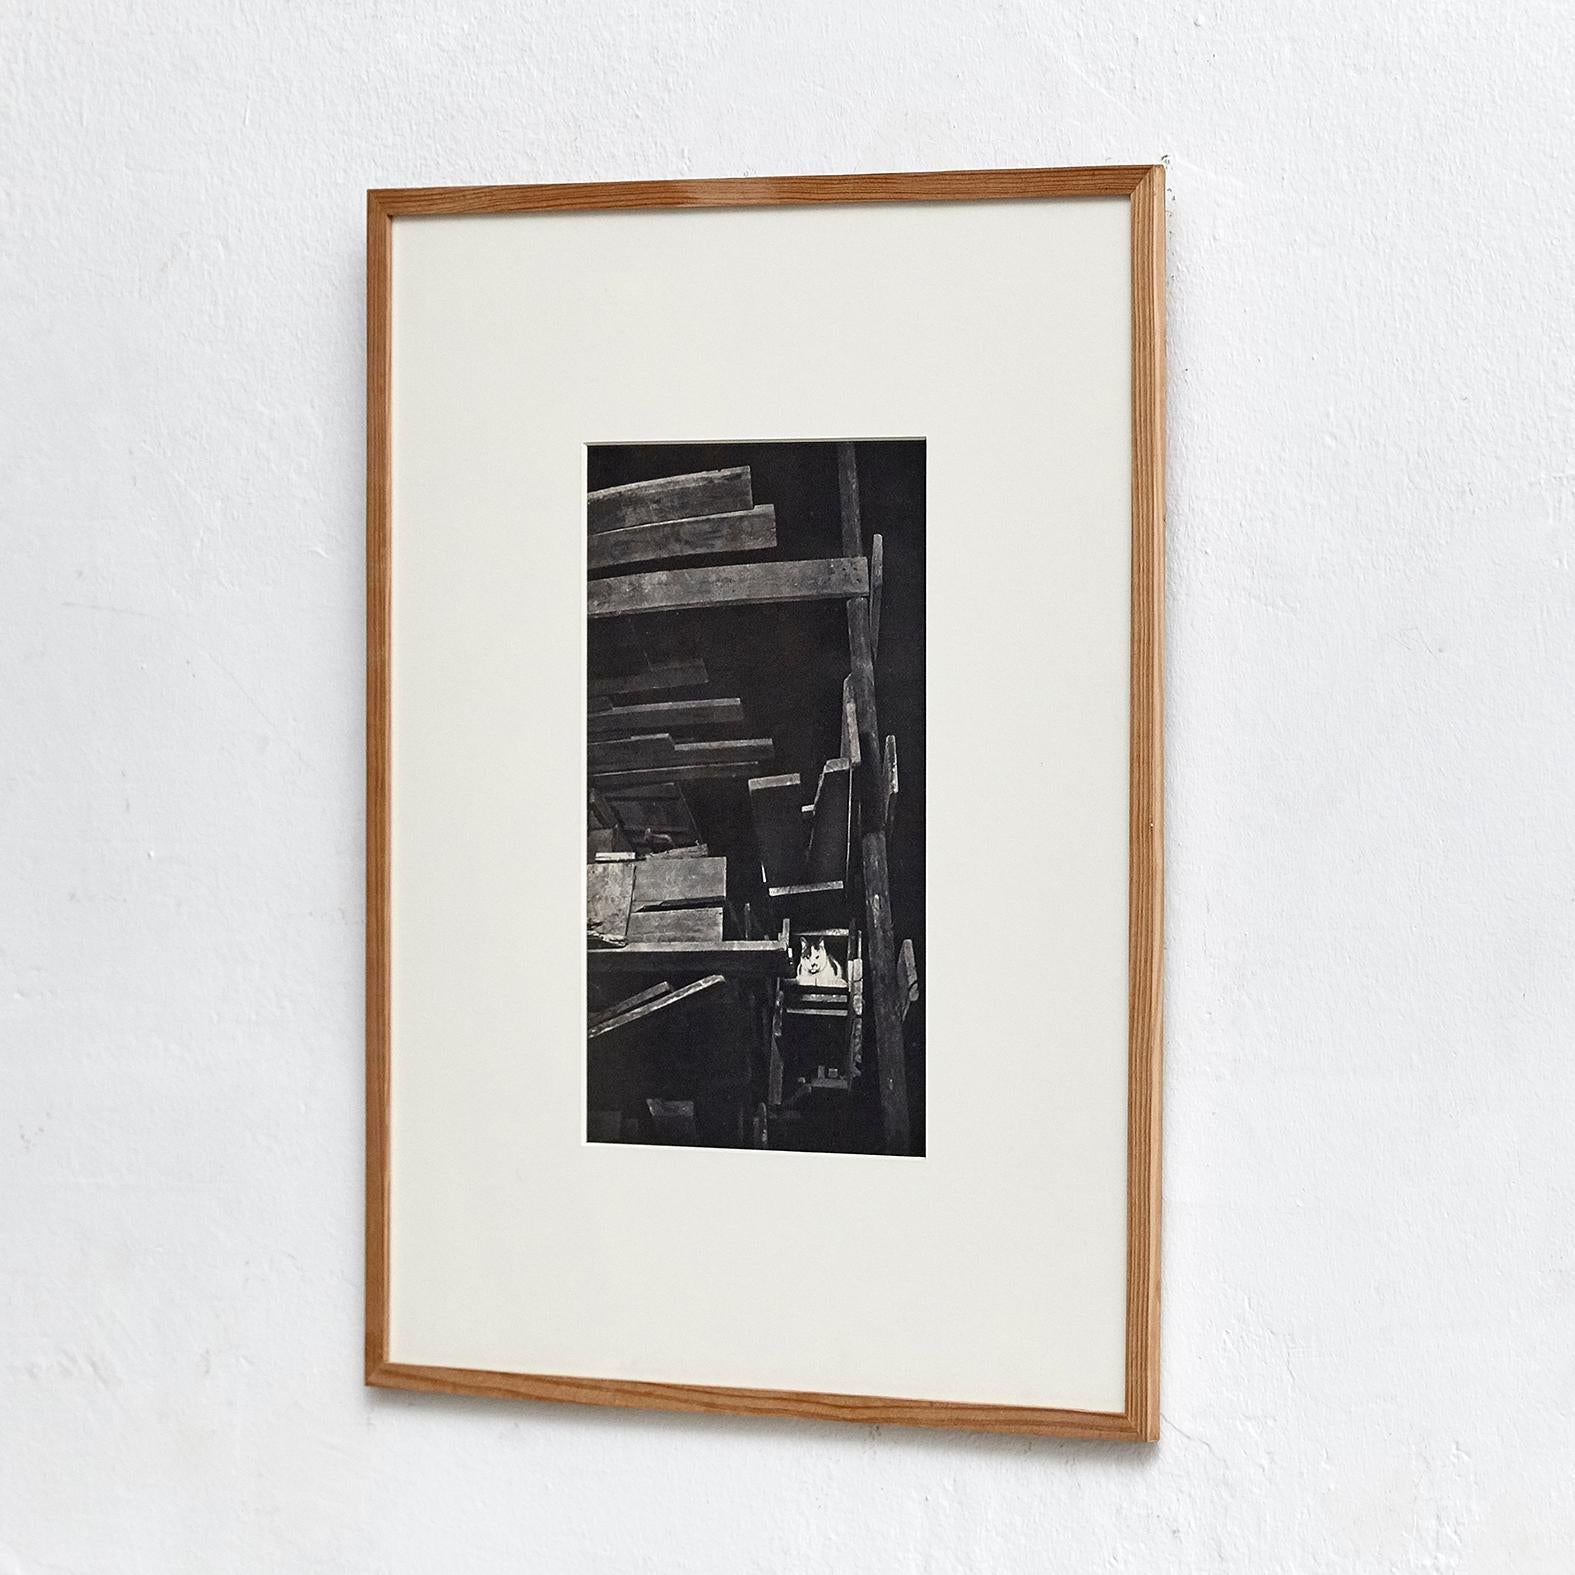 Brassai-Tiefdruckplatte im Inneren des Buches Phographie 1947, herausgegeben von Arts et Metiers Graphiques.

Schwarzes Holz Gerahmt Größe 40 x 50 cm

Brassaï (Pseudonym von Gyula Halász; 9. September 1899-8. Juli 1984) war ein